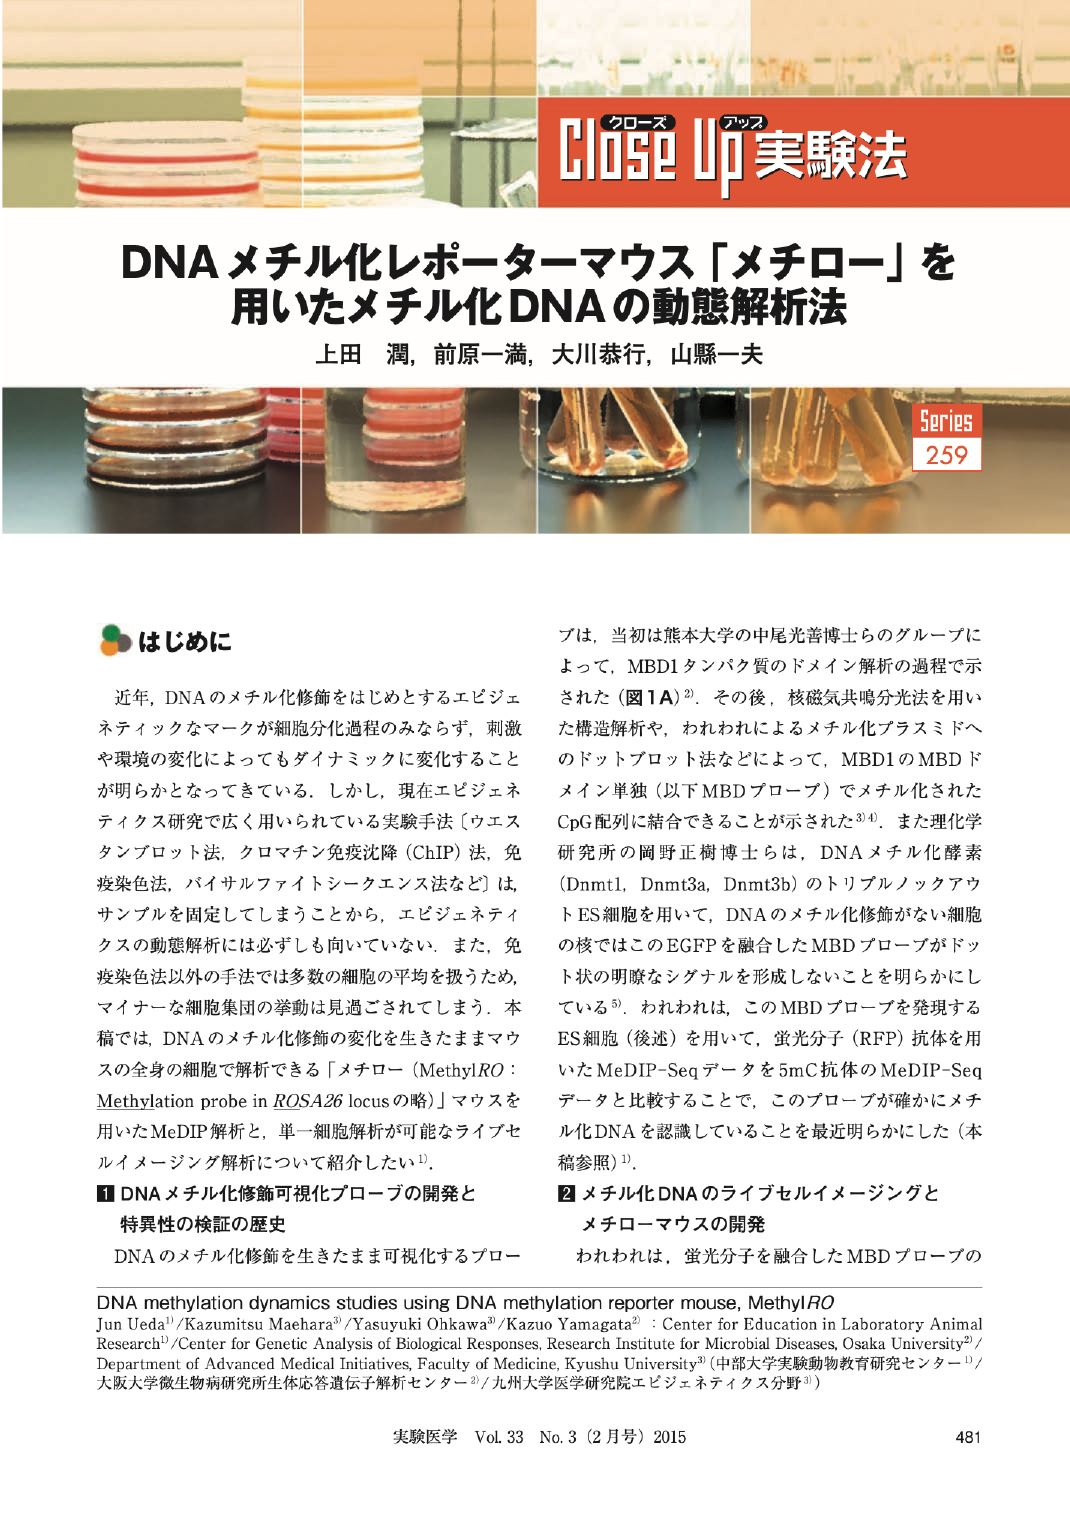 DNAメチル化レポーターマウス「メチロー」を用いたメチル化DNAの動態解析法